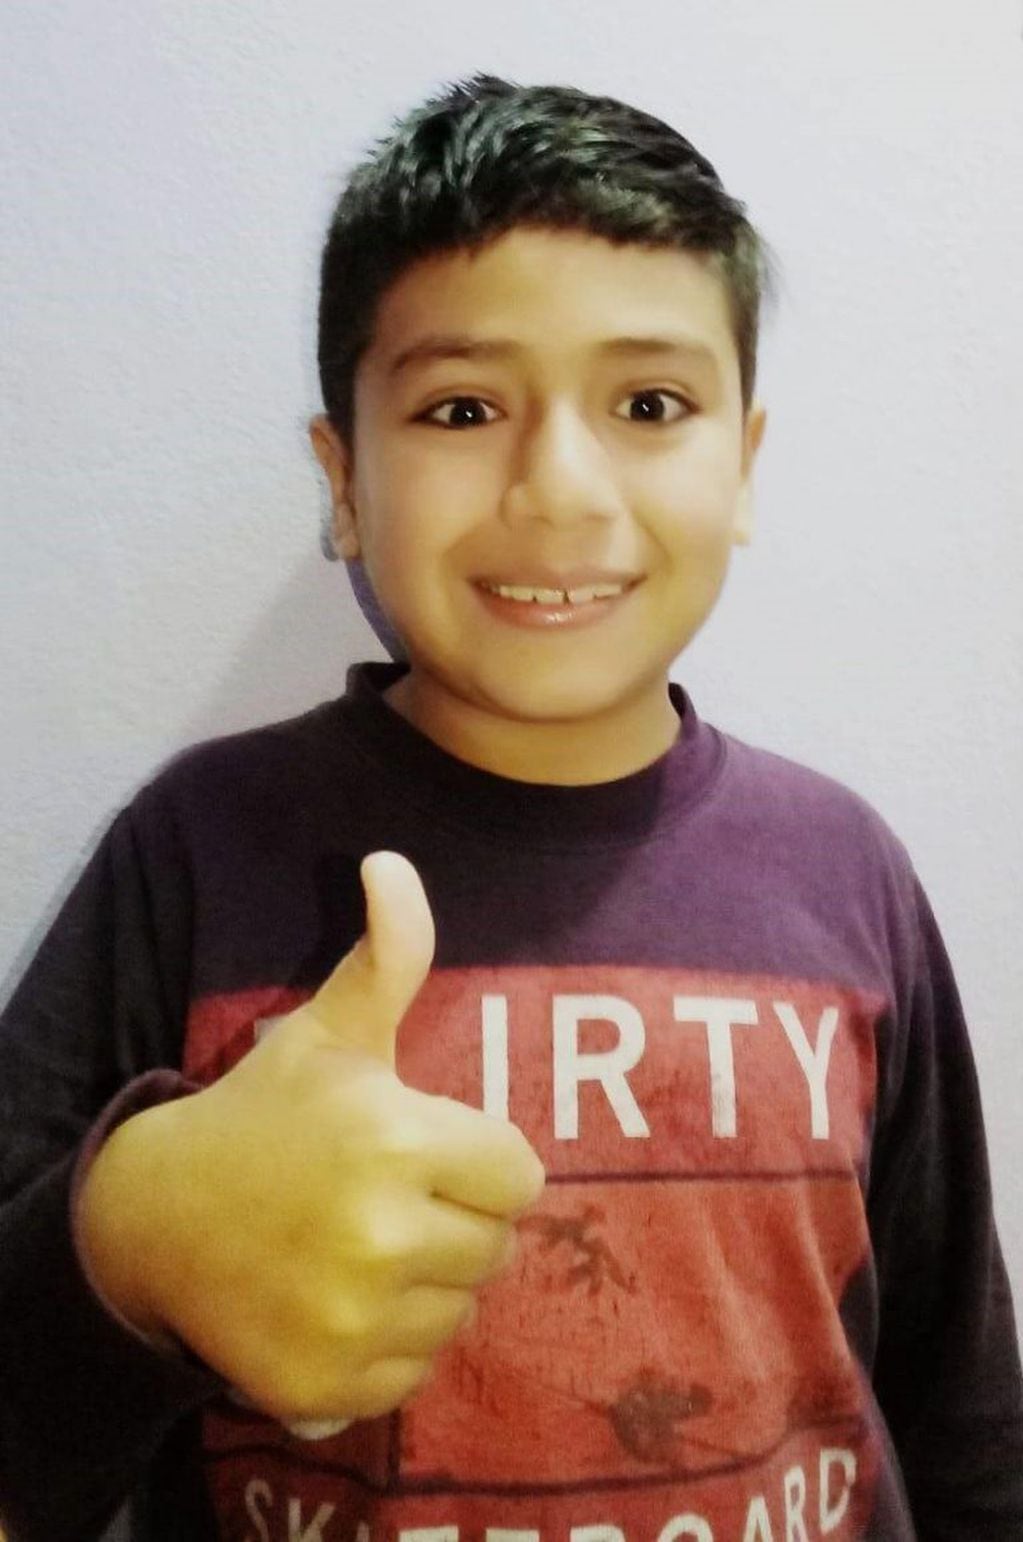 "Fermín" el niño entrerriano que venció al cáncer en cuarentena
Crédito: TN